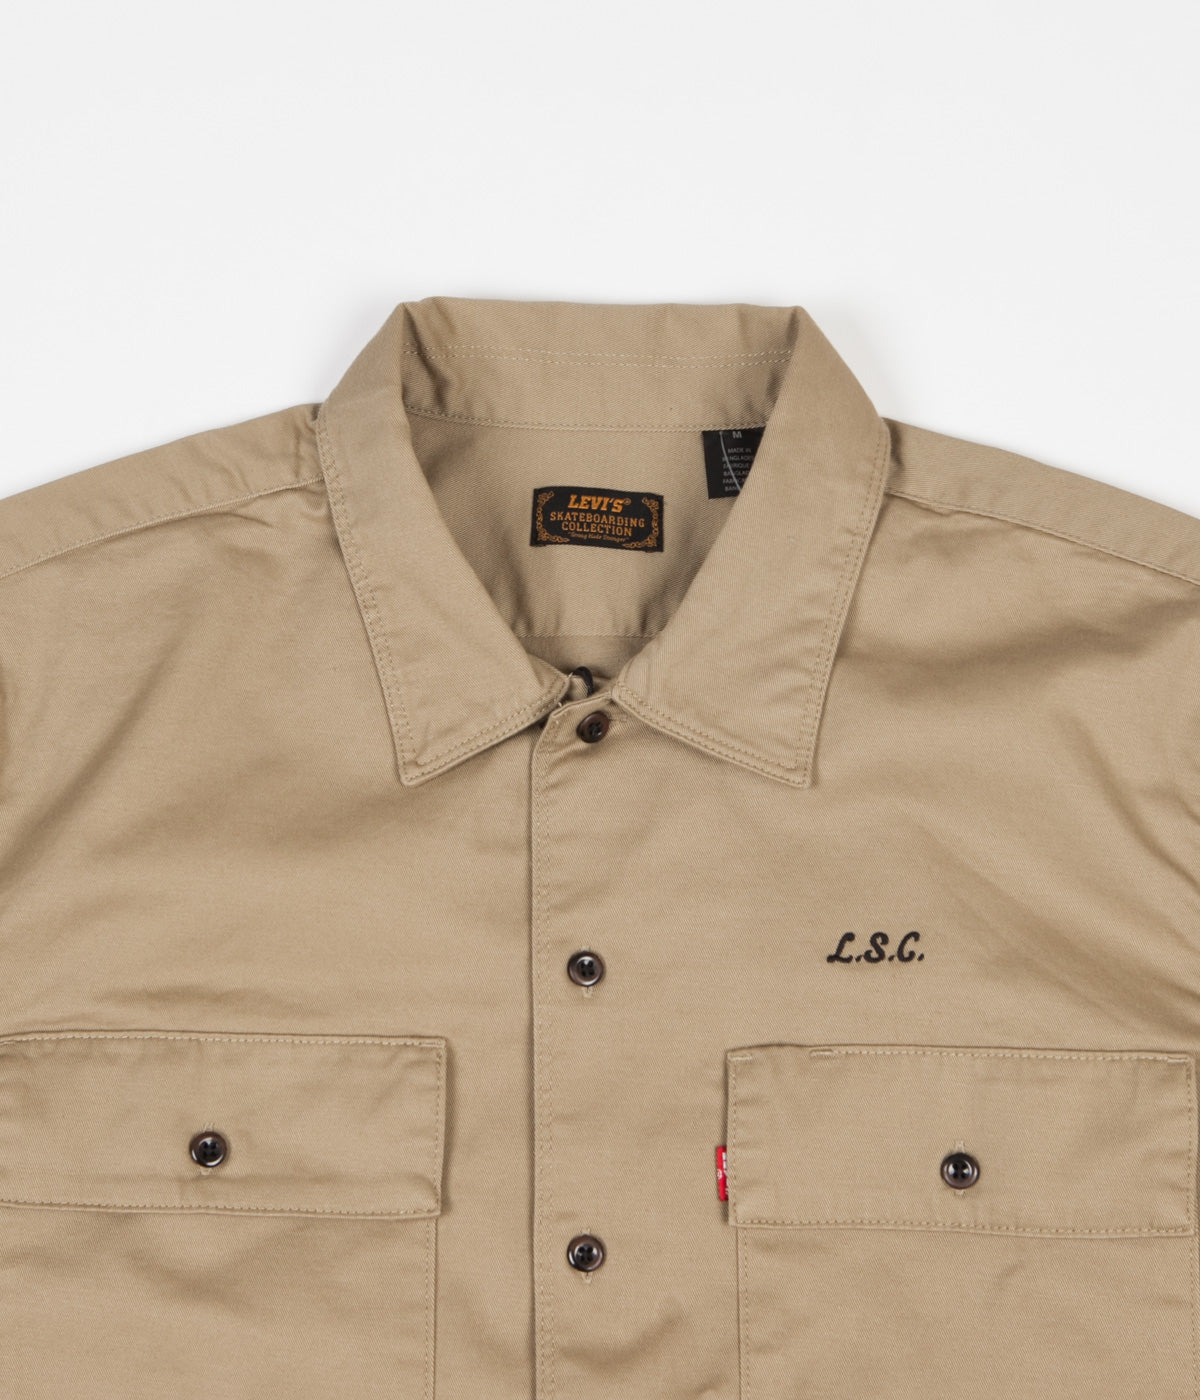 Levi's® Skate Short Sleeve Button Down Shirt - Harvest Gold | Flatspot